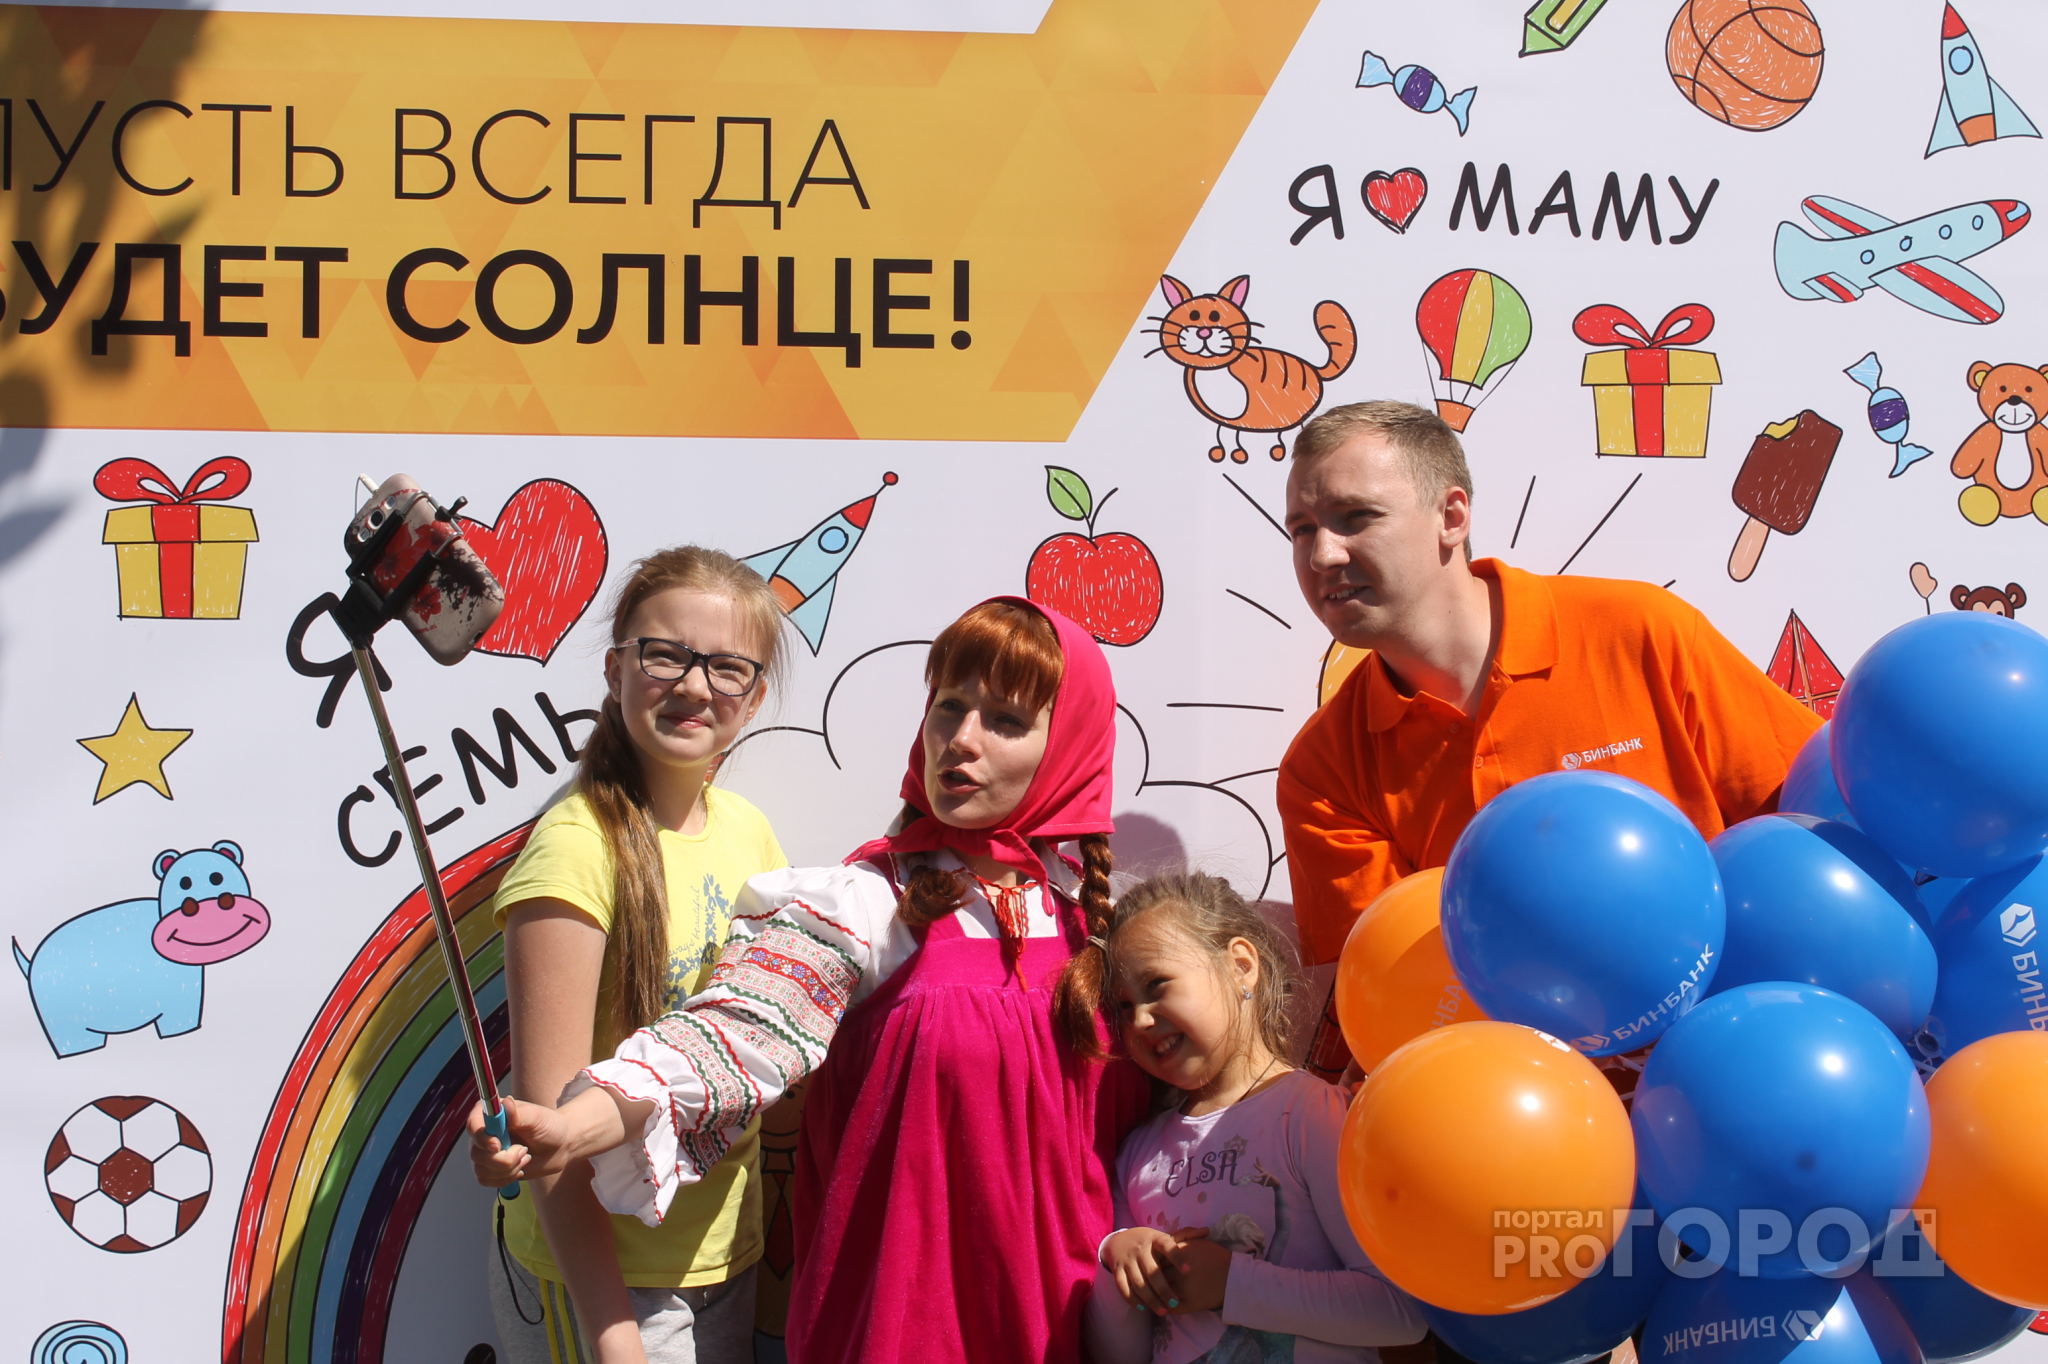 Большой праздник для детей пройдет первого июня в Ярославле